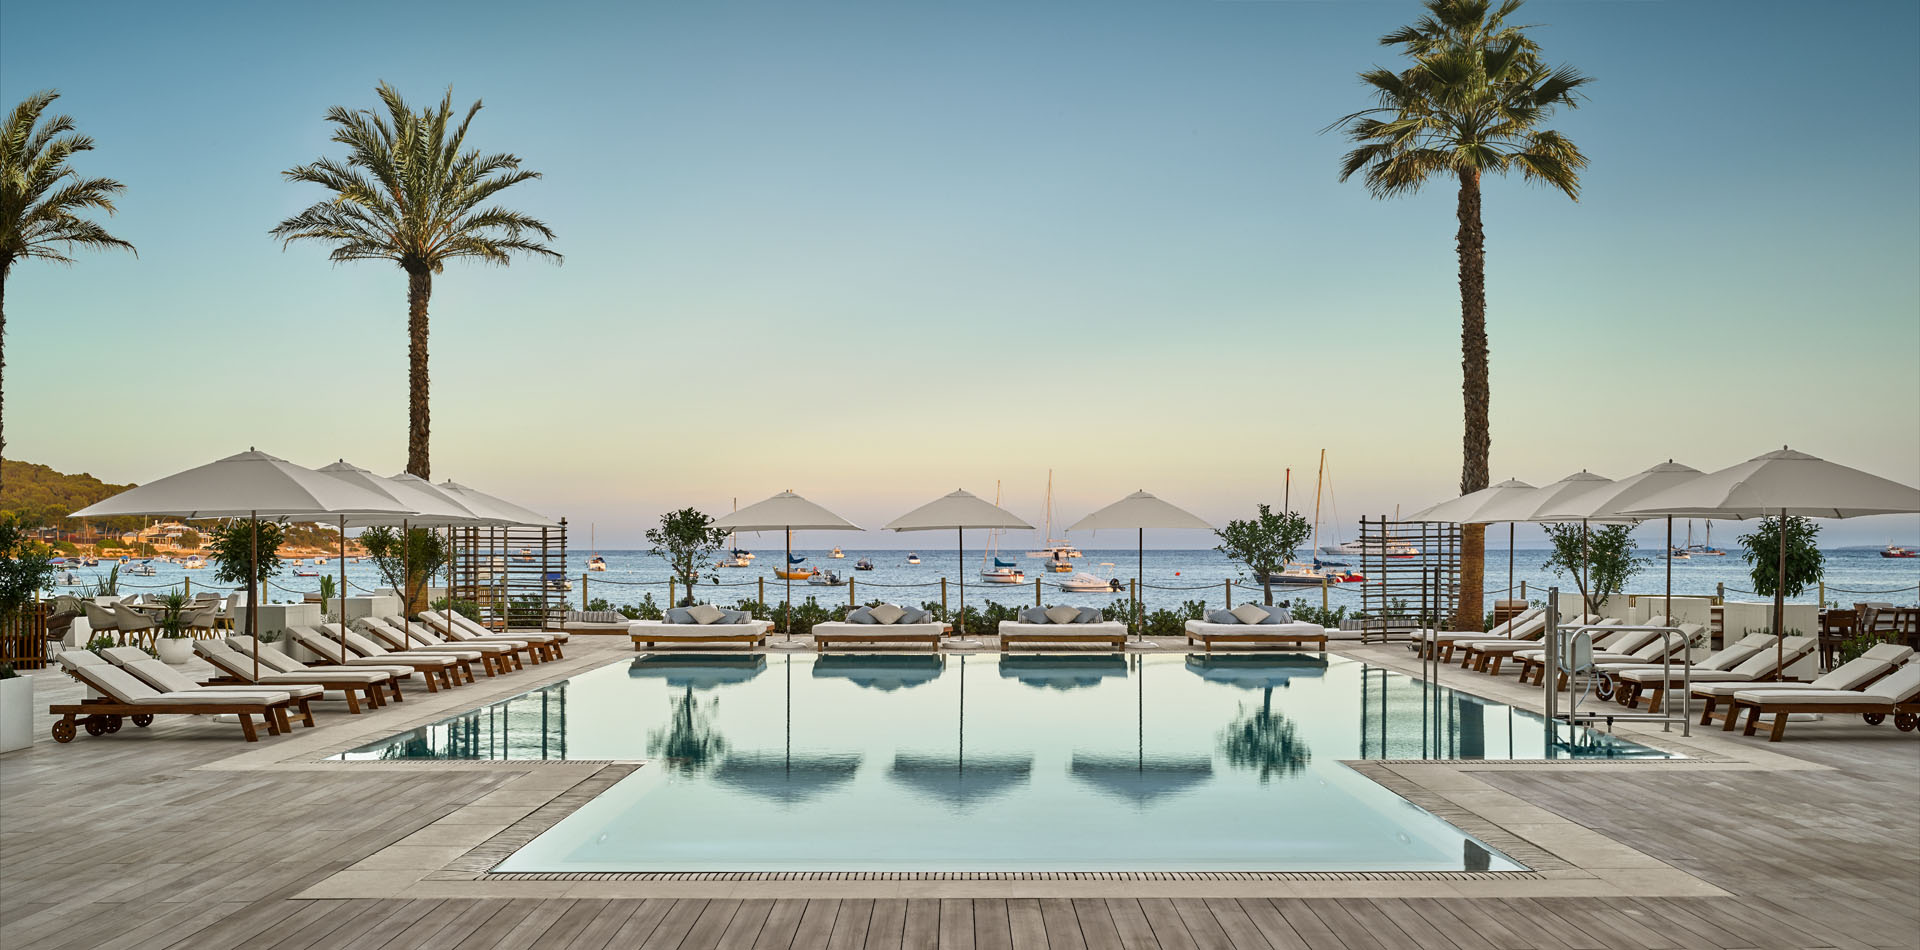 Luxusurlaub auf Ibiza